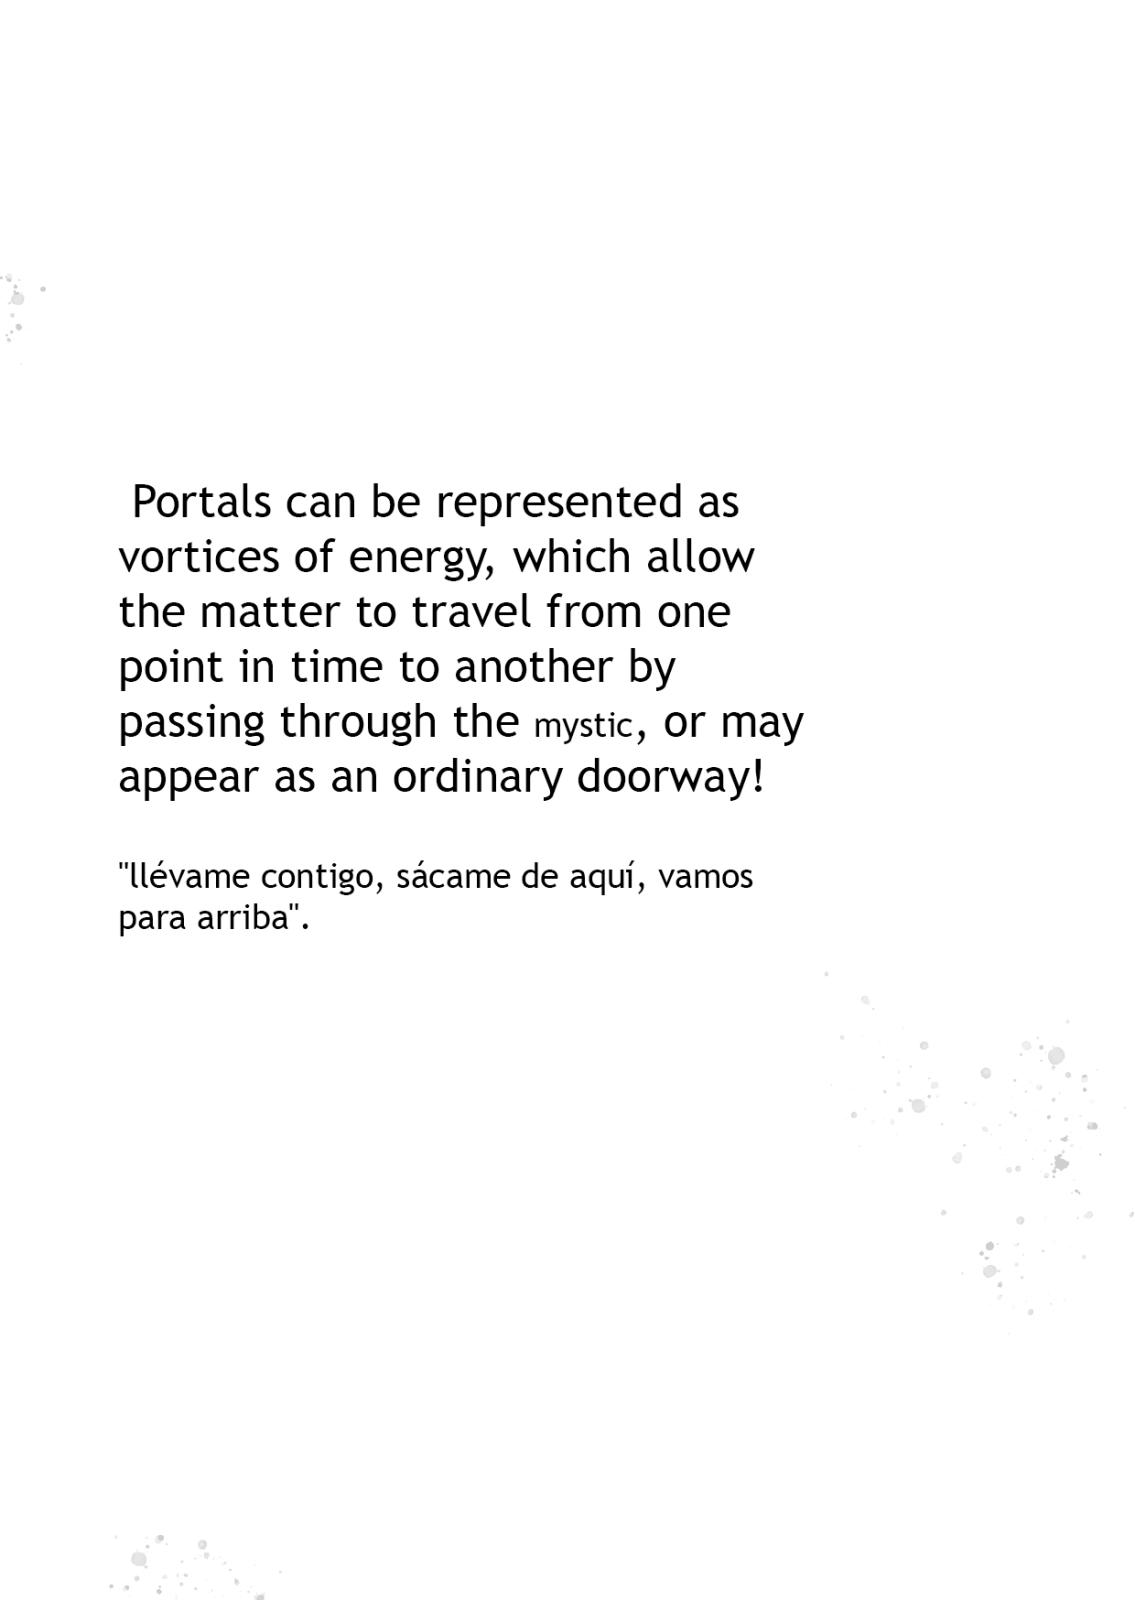 002 - Portals